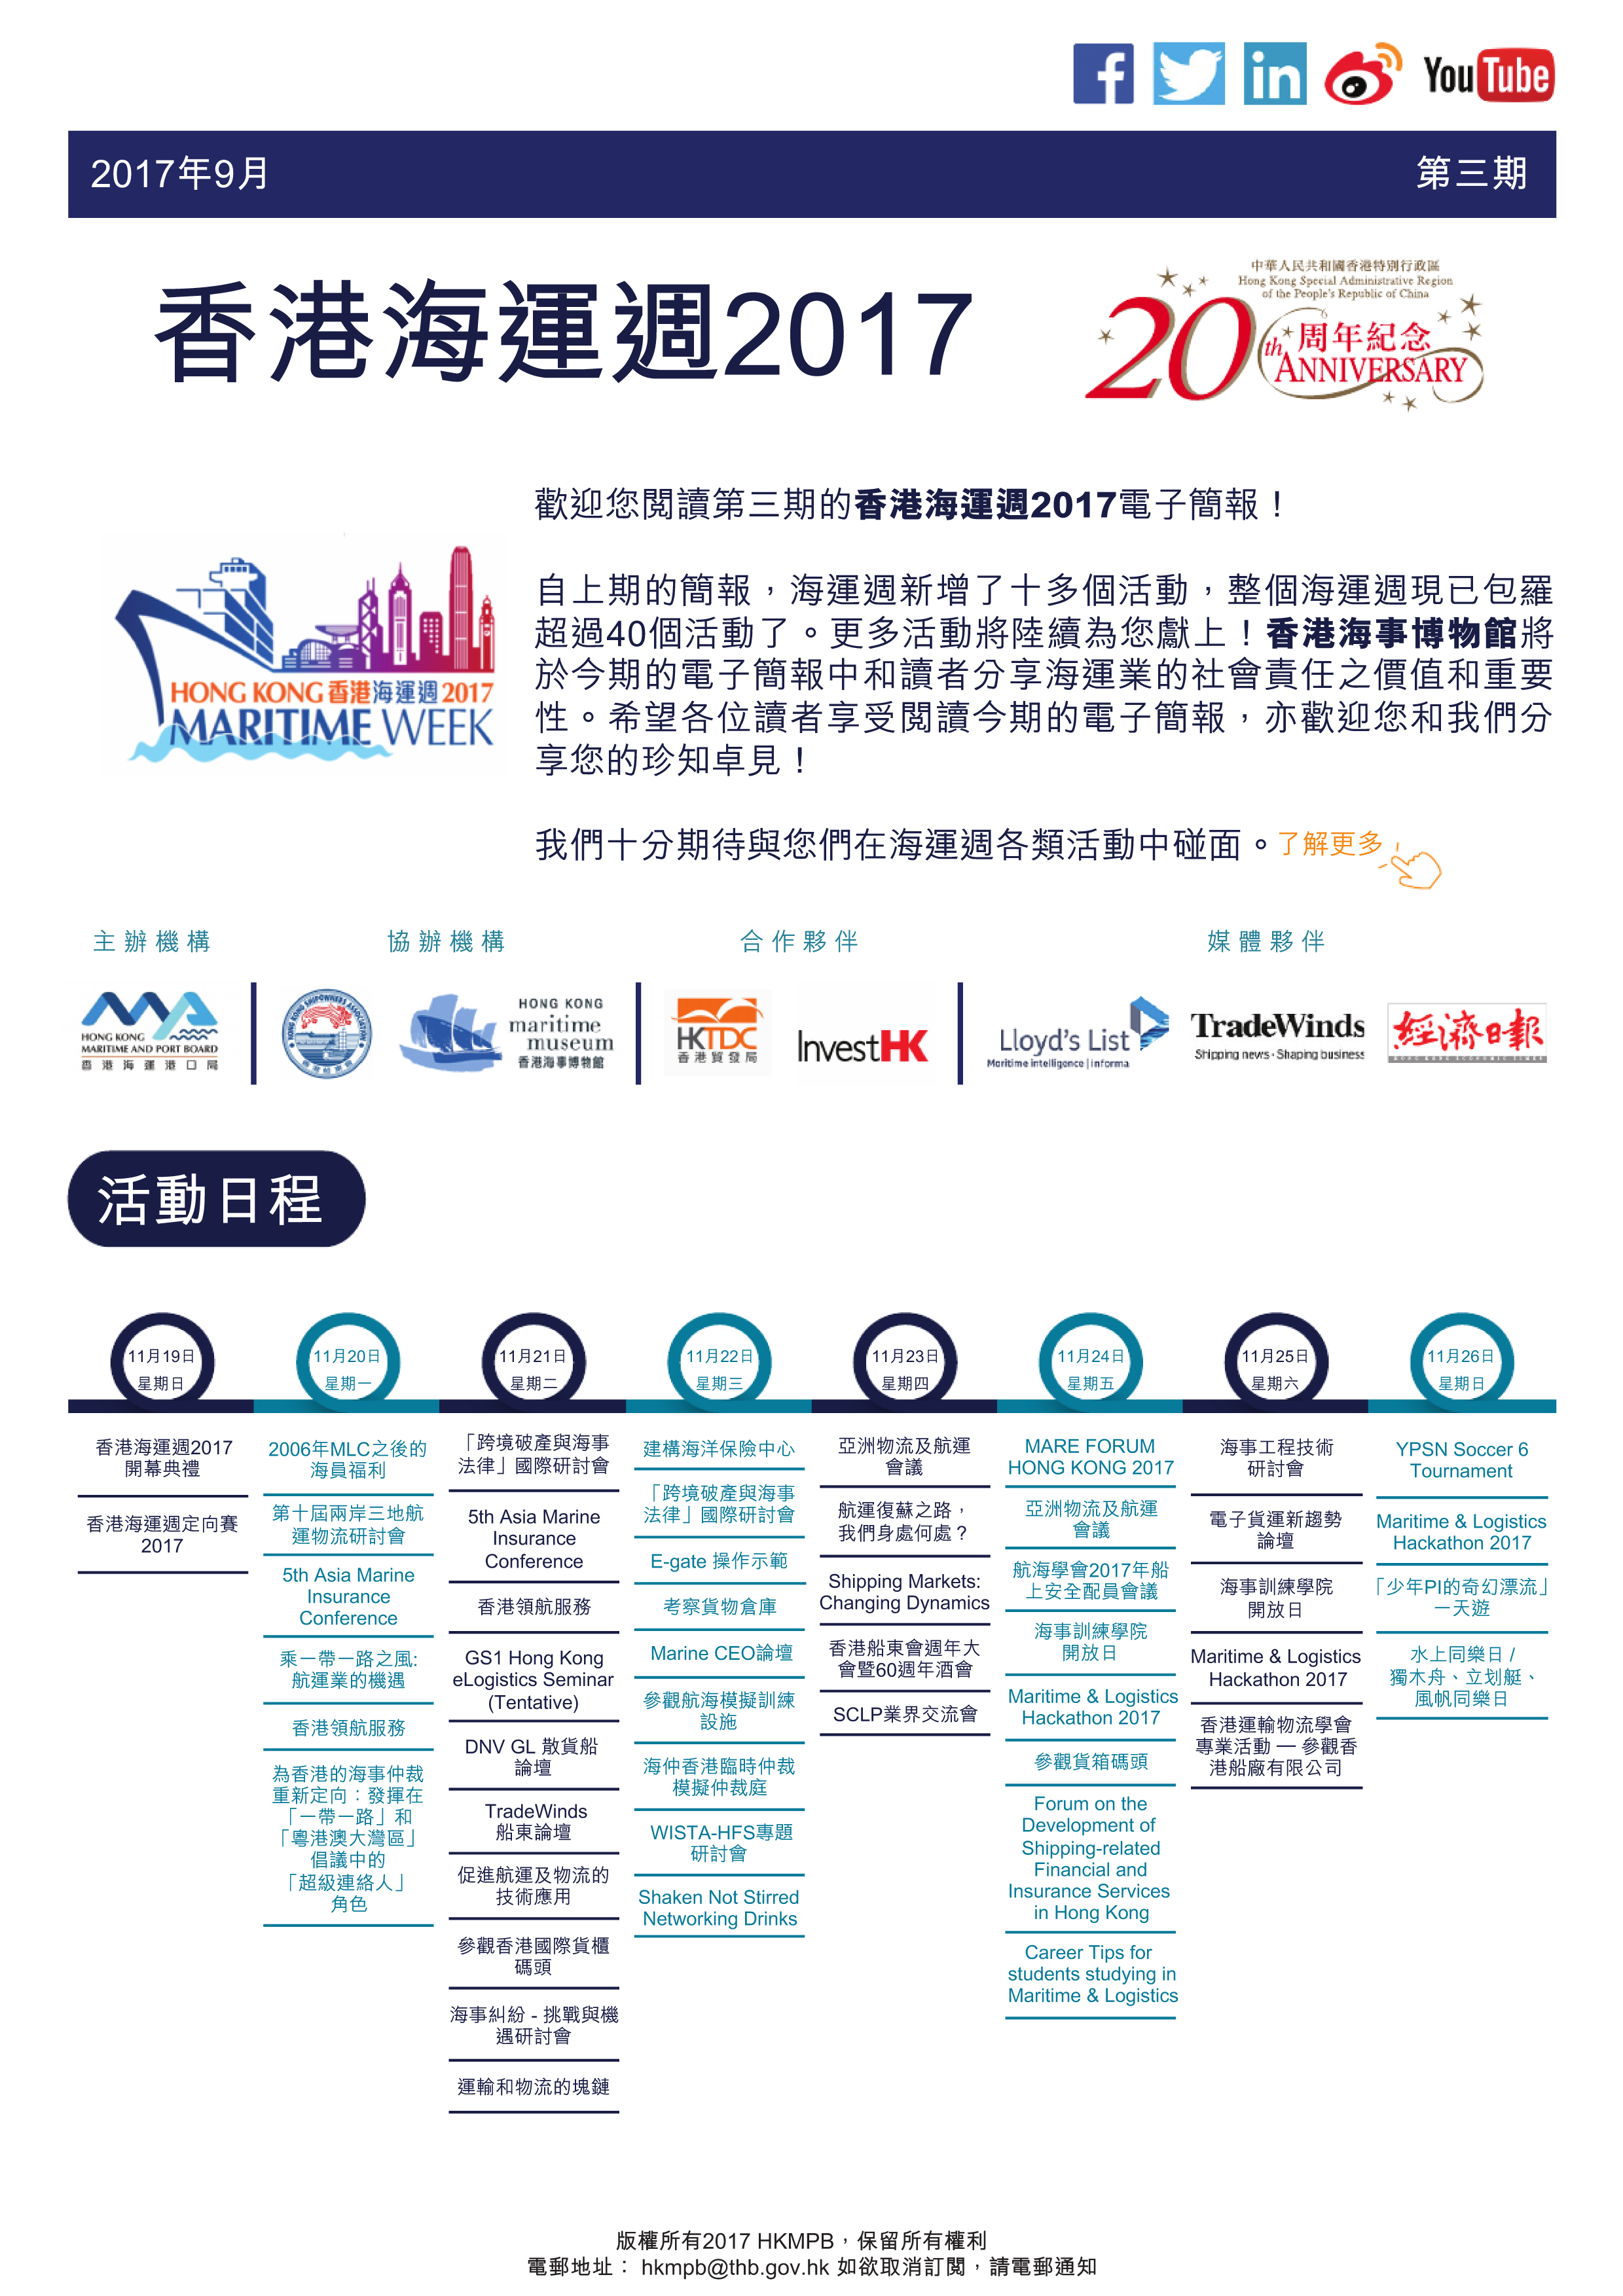 香港海運週2017 電子簡報第3期